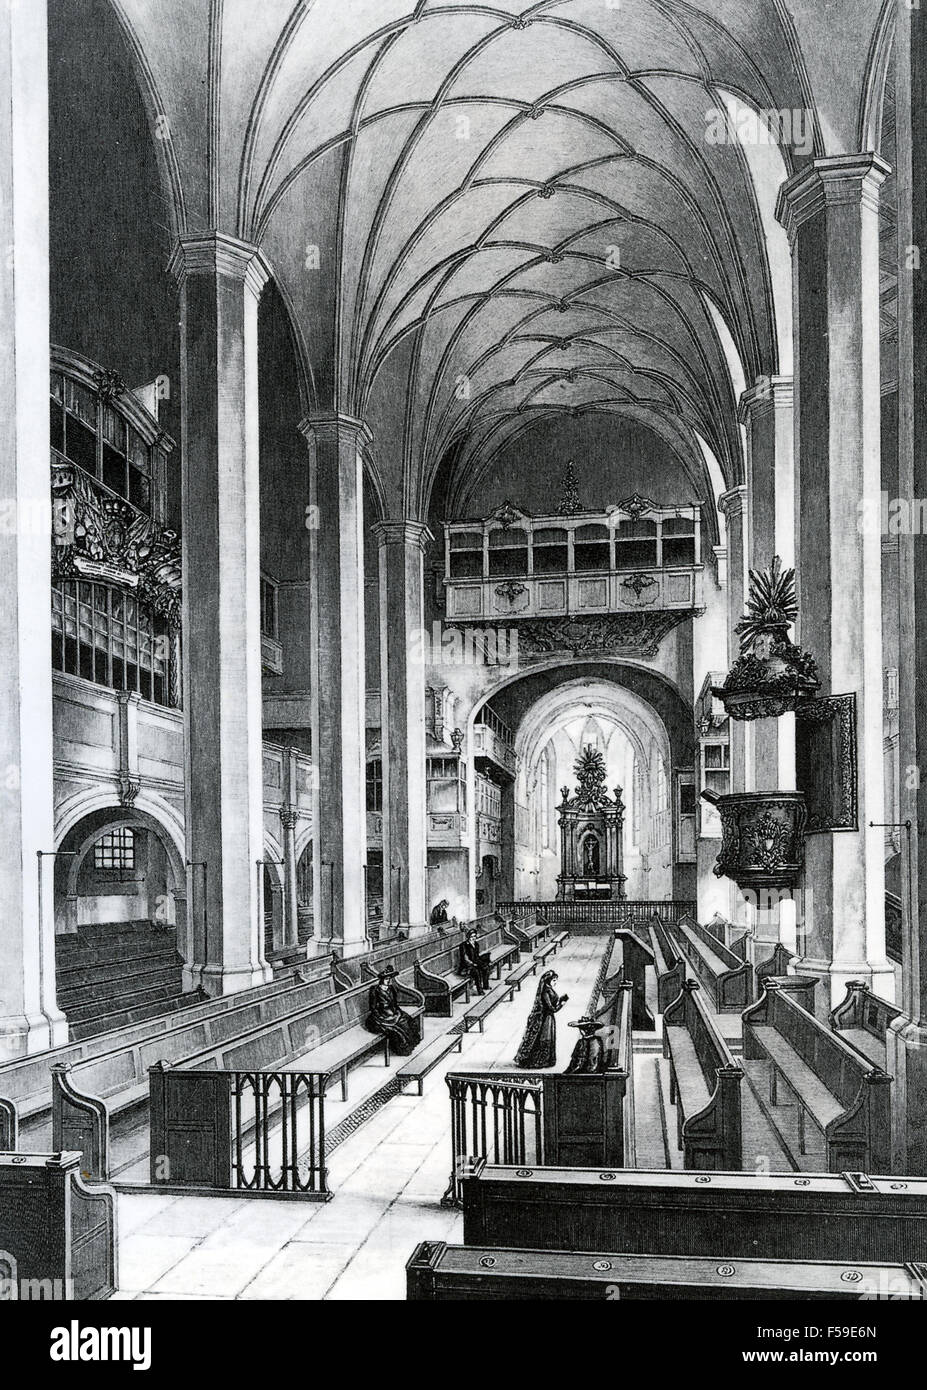 L'ÉGLISE ST THOMAS, LEIPZIG. Gravure de l'intérieur à propos de 1800. Bach a été chef de chœur à partir de 1723-1750 Banque D'Images